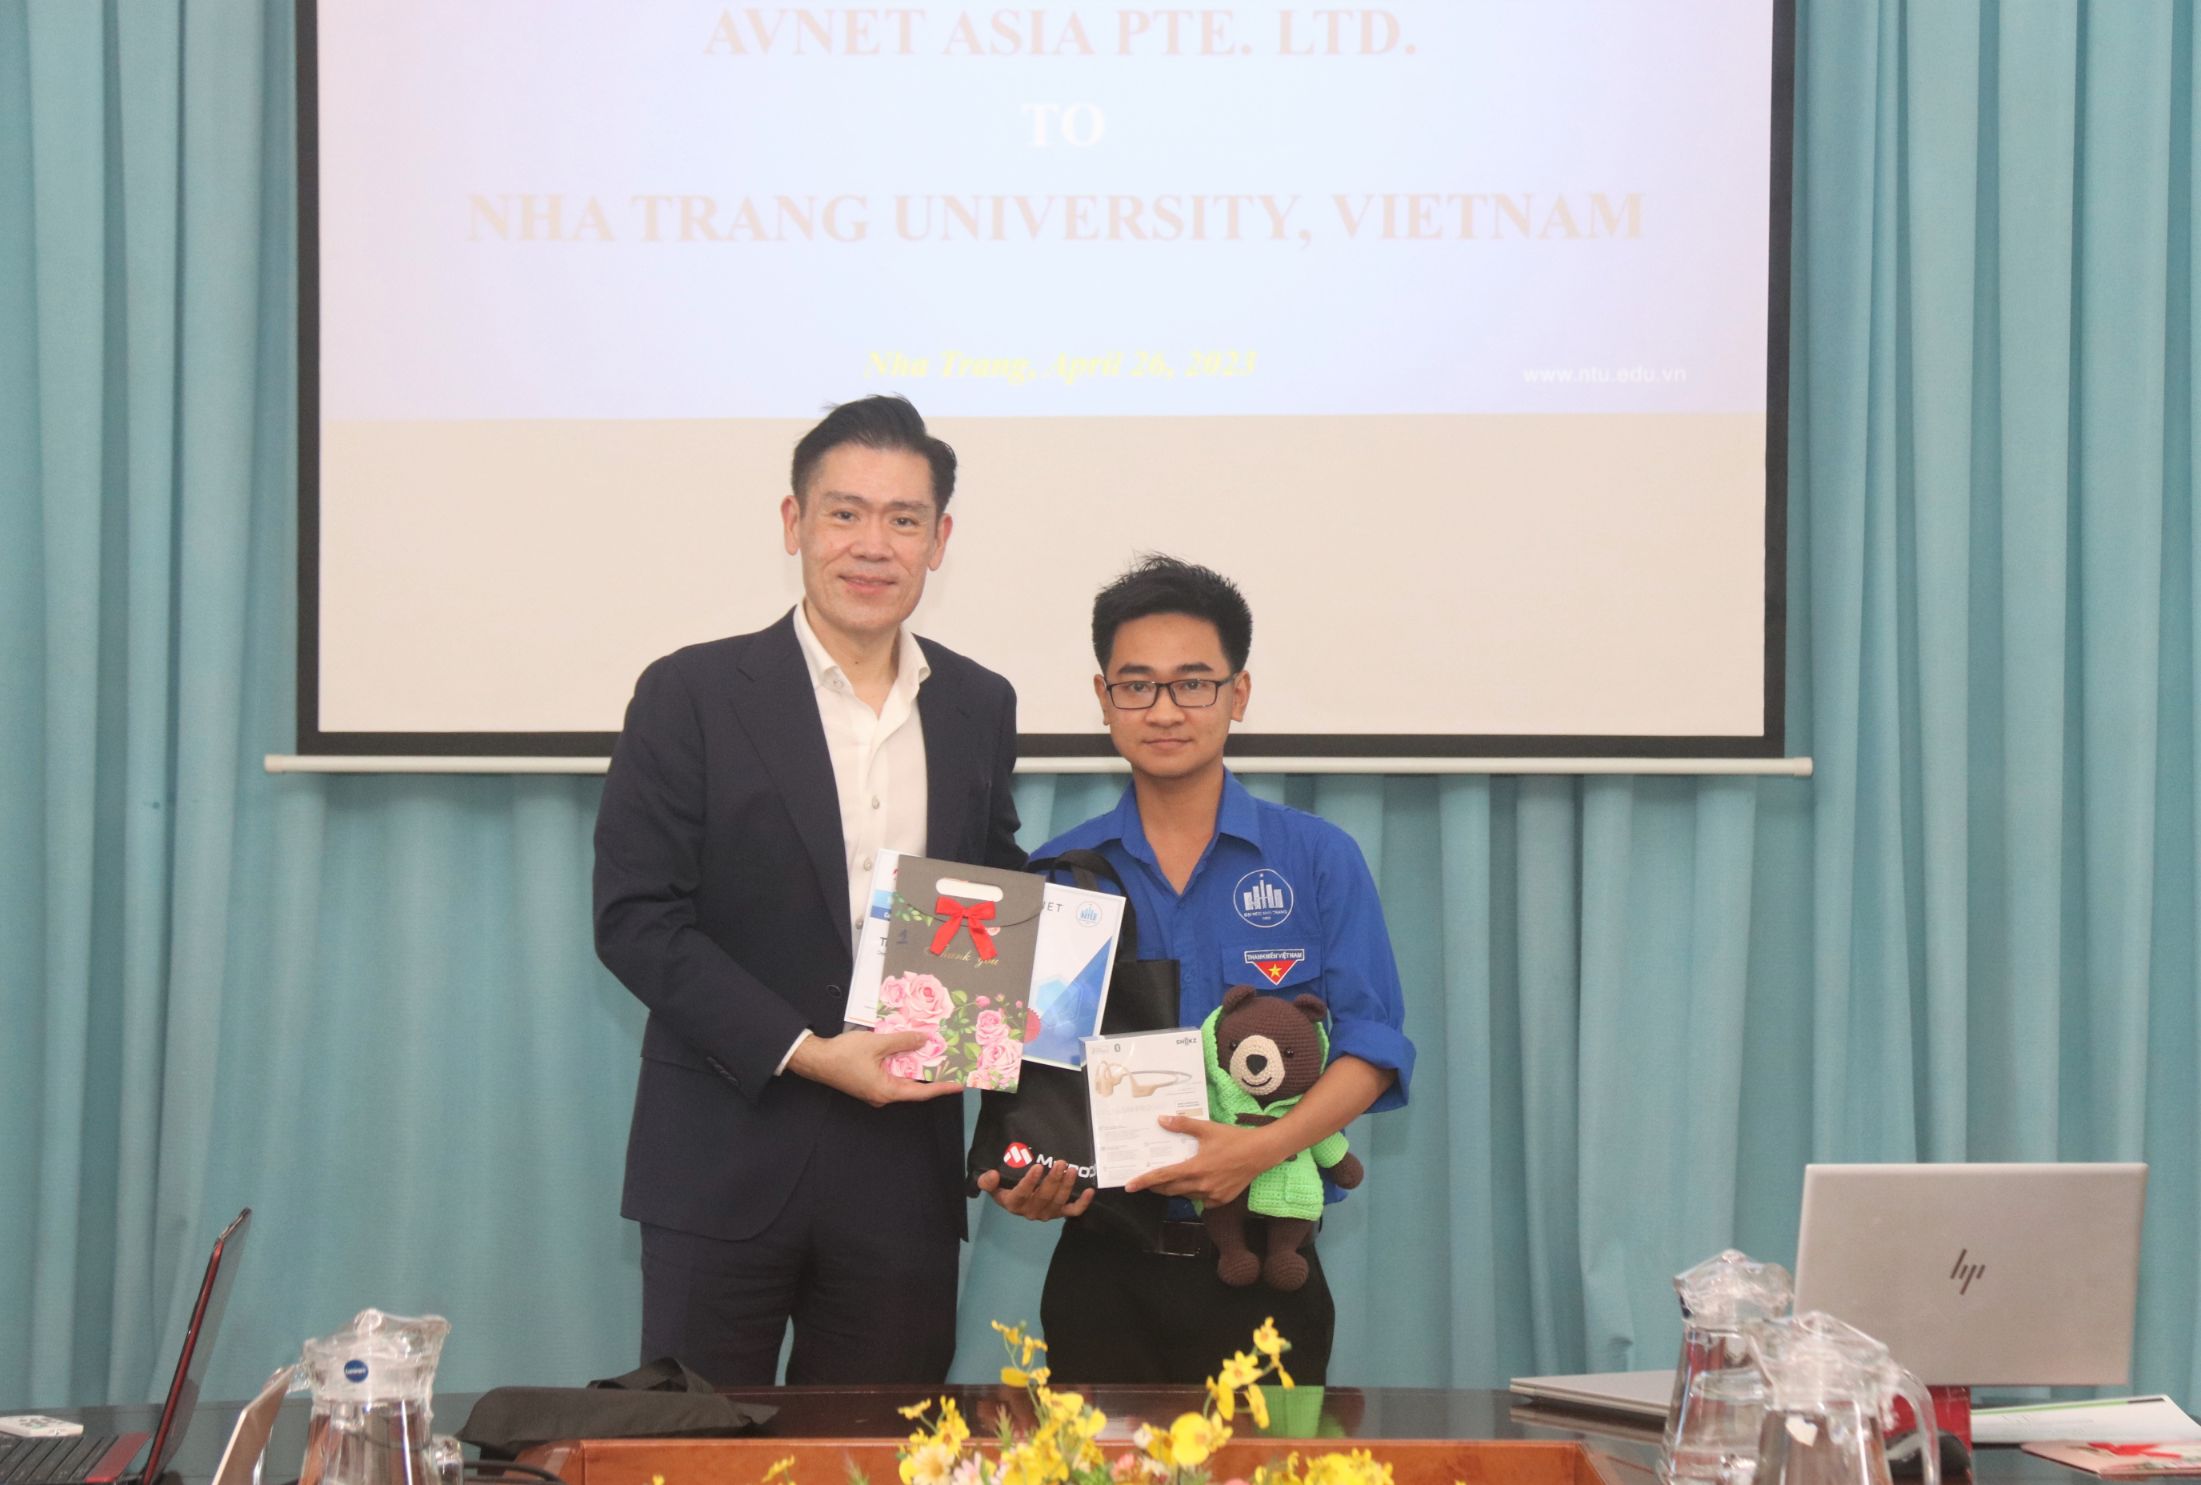 Winston Tan and Vo Quynh Thong Avnet và Đại học Nha Trang trao giải thưởng cho sinh viên có phát minh sáng tạo